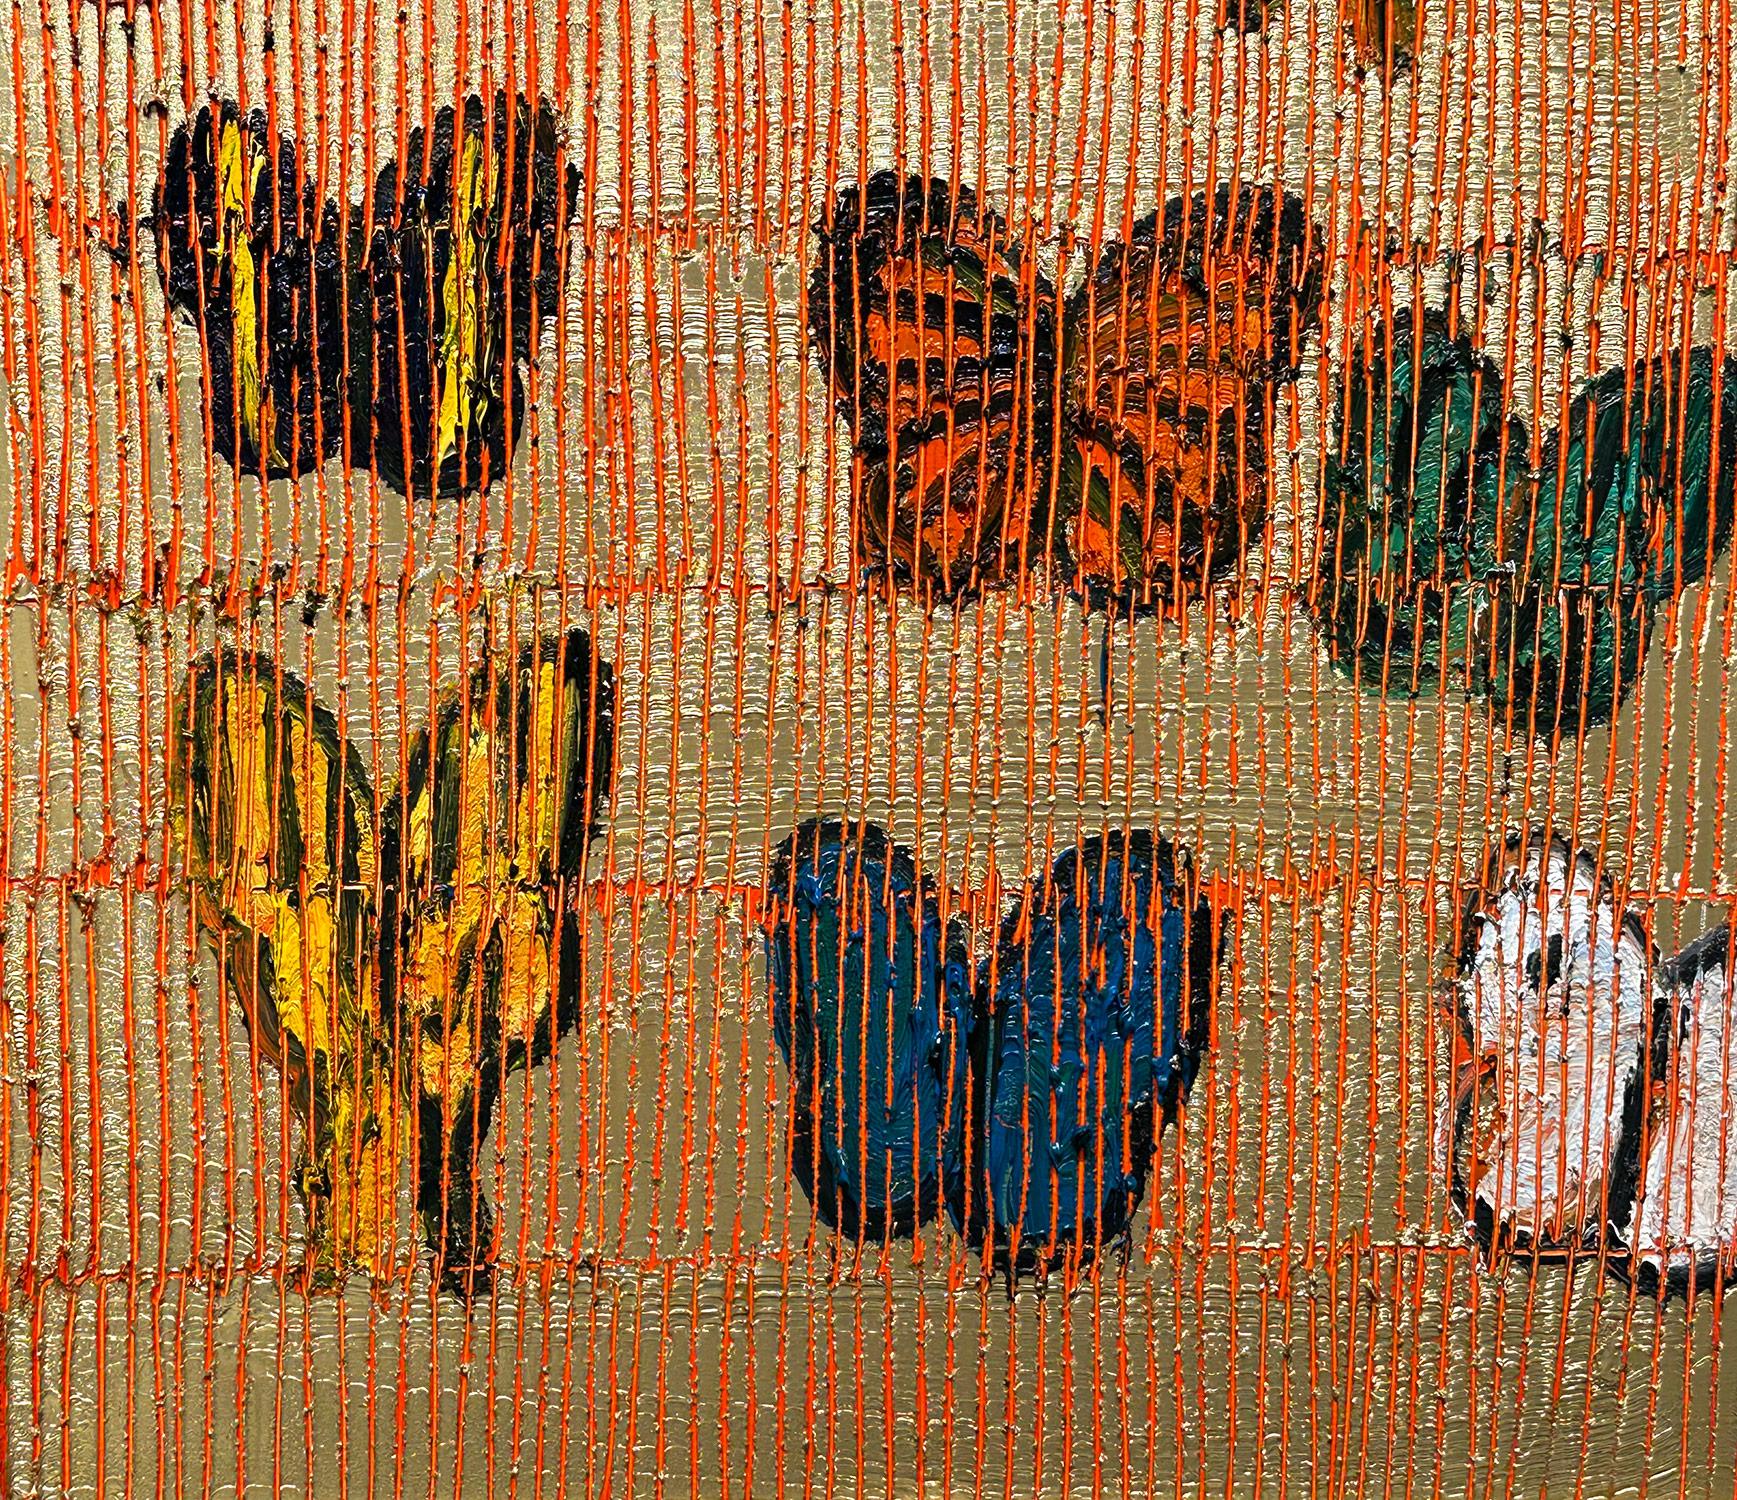 Eine wunderbare Komposition eines der ikonischsten Motive von Slonem, nämlich Schmetterlinge. Dieses Stück zeigt mehrfarbige, zarte Schmetterlinge in aufsteigender Bewegung in einer wunderschönen, leuchtenden Goldlandschaft. Slonem zeichnet seine